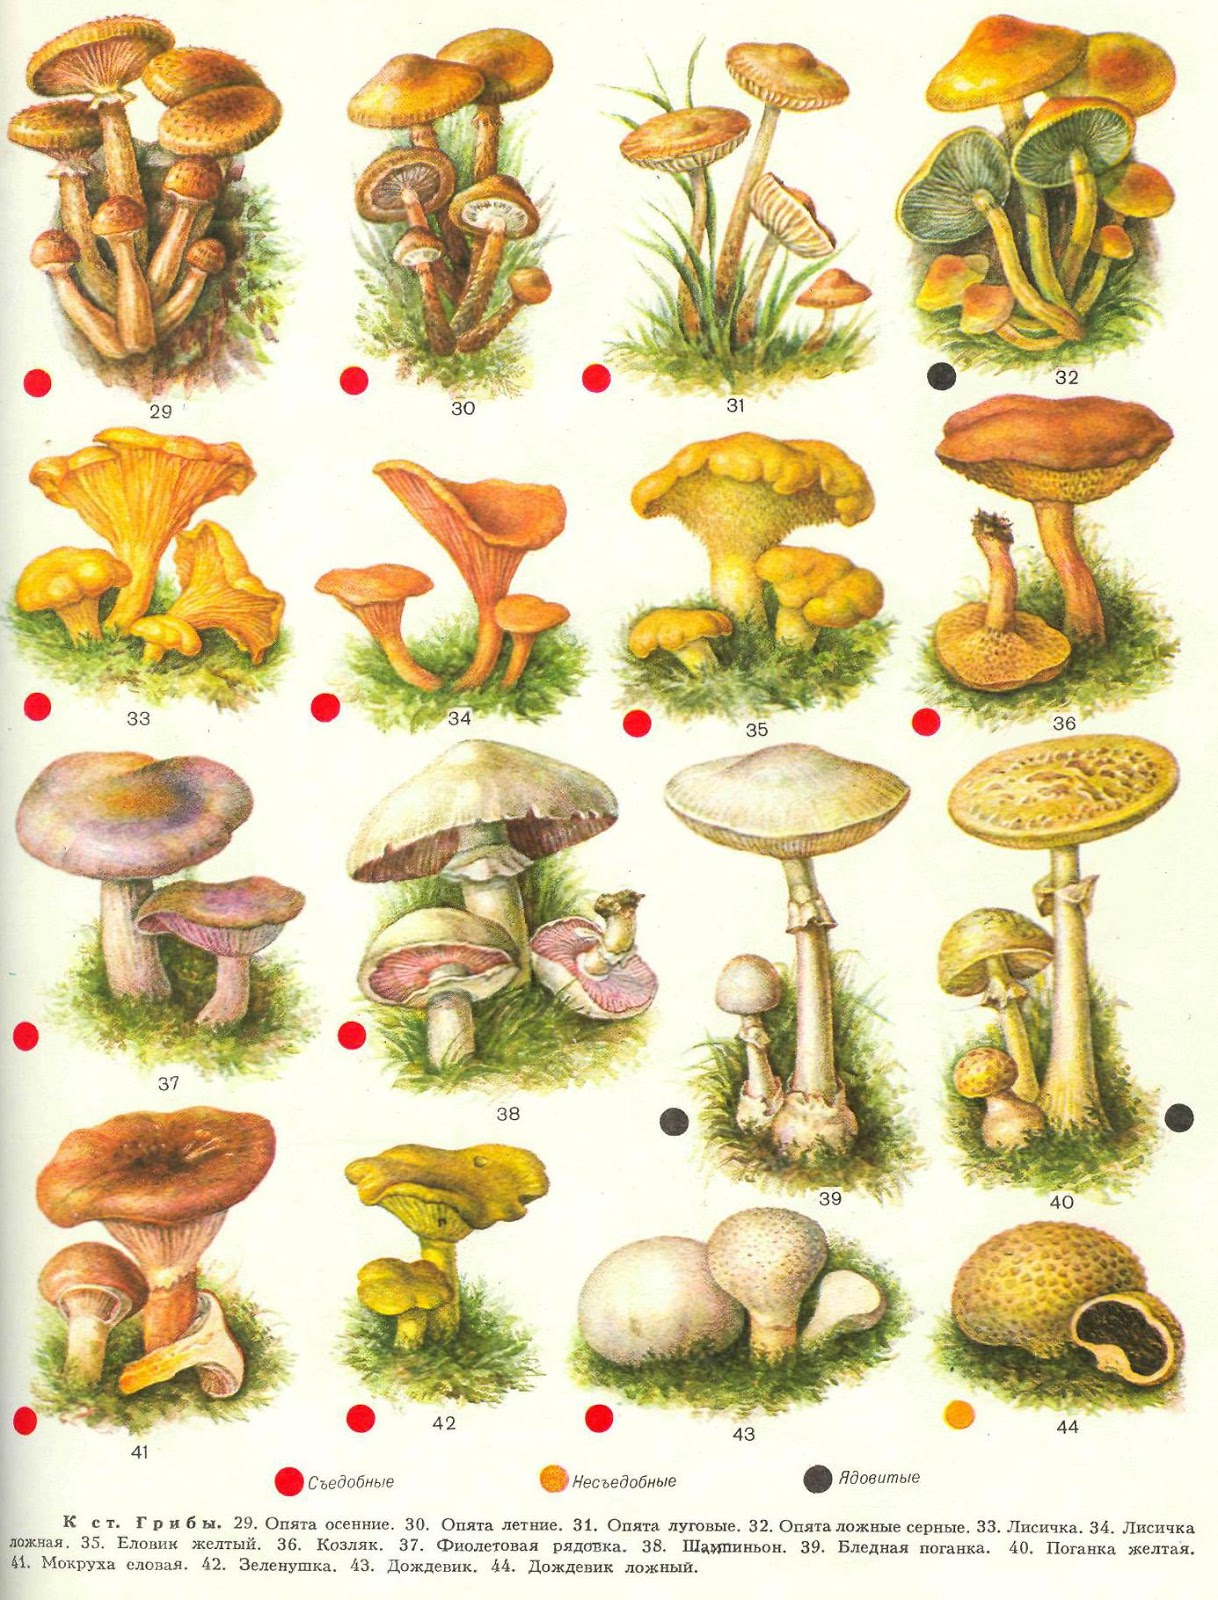 Гри д. Съедобные грибы и несъедобные грибы. Грибы съедобные несъедобные и ядовитые. Рисунки съедобных грибов и несъедобных грибов с названиями. Грибы седобгые и не съедобгые.